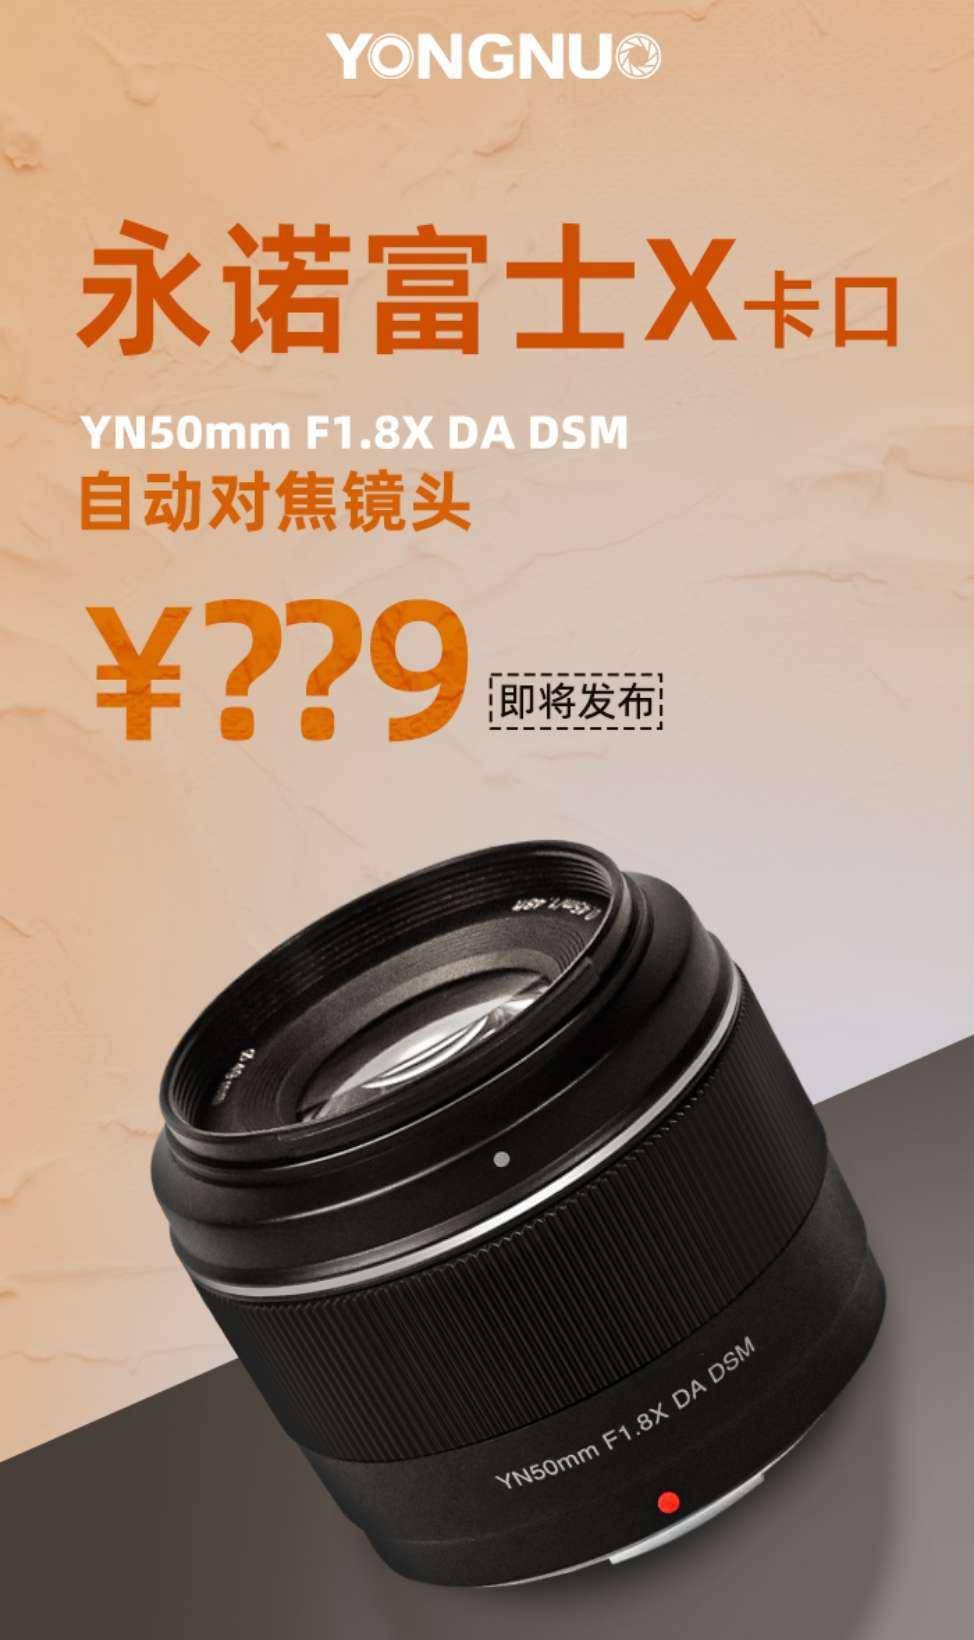 永诺 YN50mm F1.8X DA DSM 富士 X 卡口镜头将发布，等效全画幅约 75mm 视角